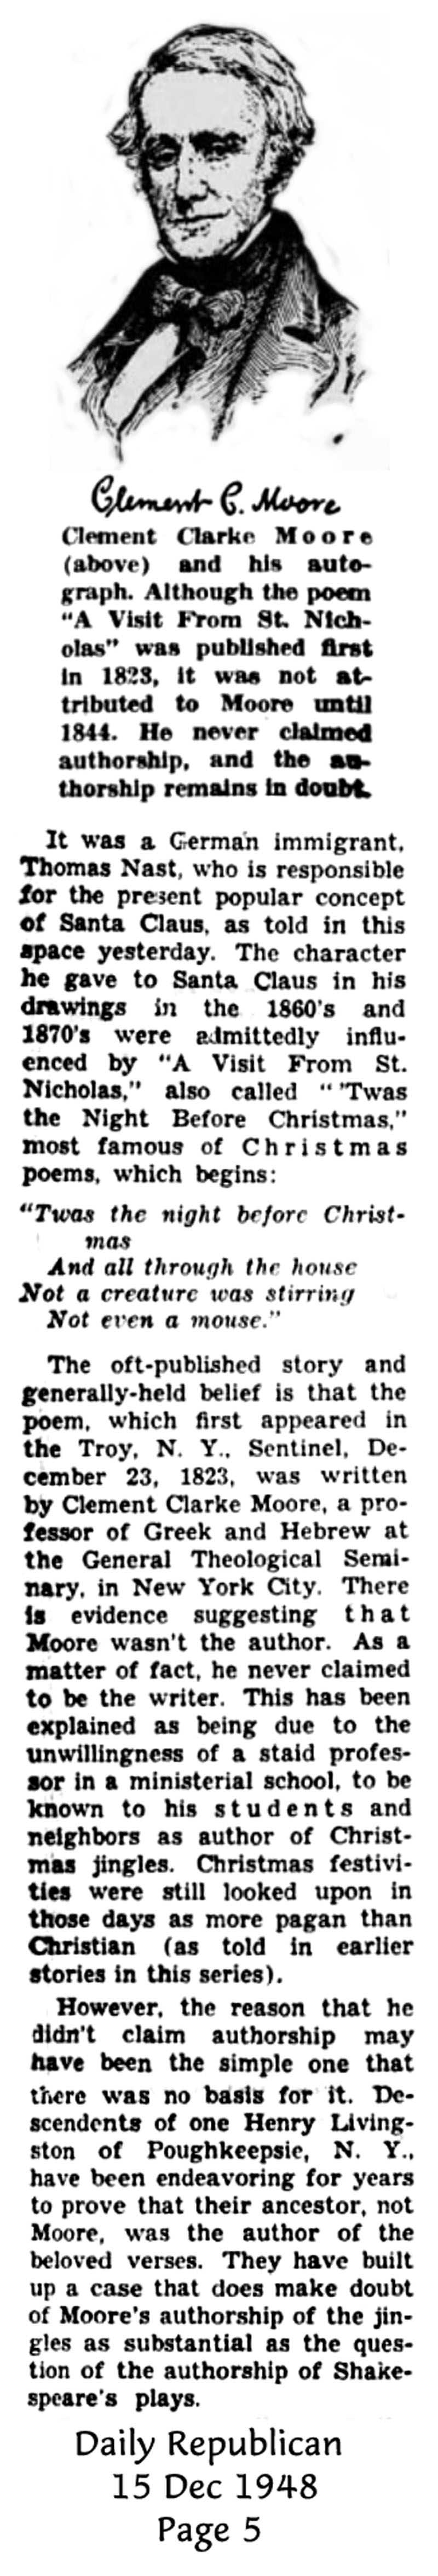 The Daily Republican - 15 Dec 1948 - Clark Kinnaird